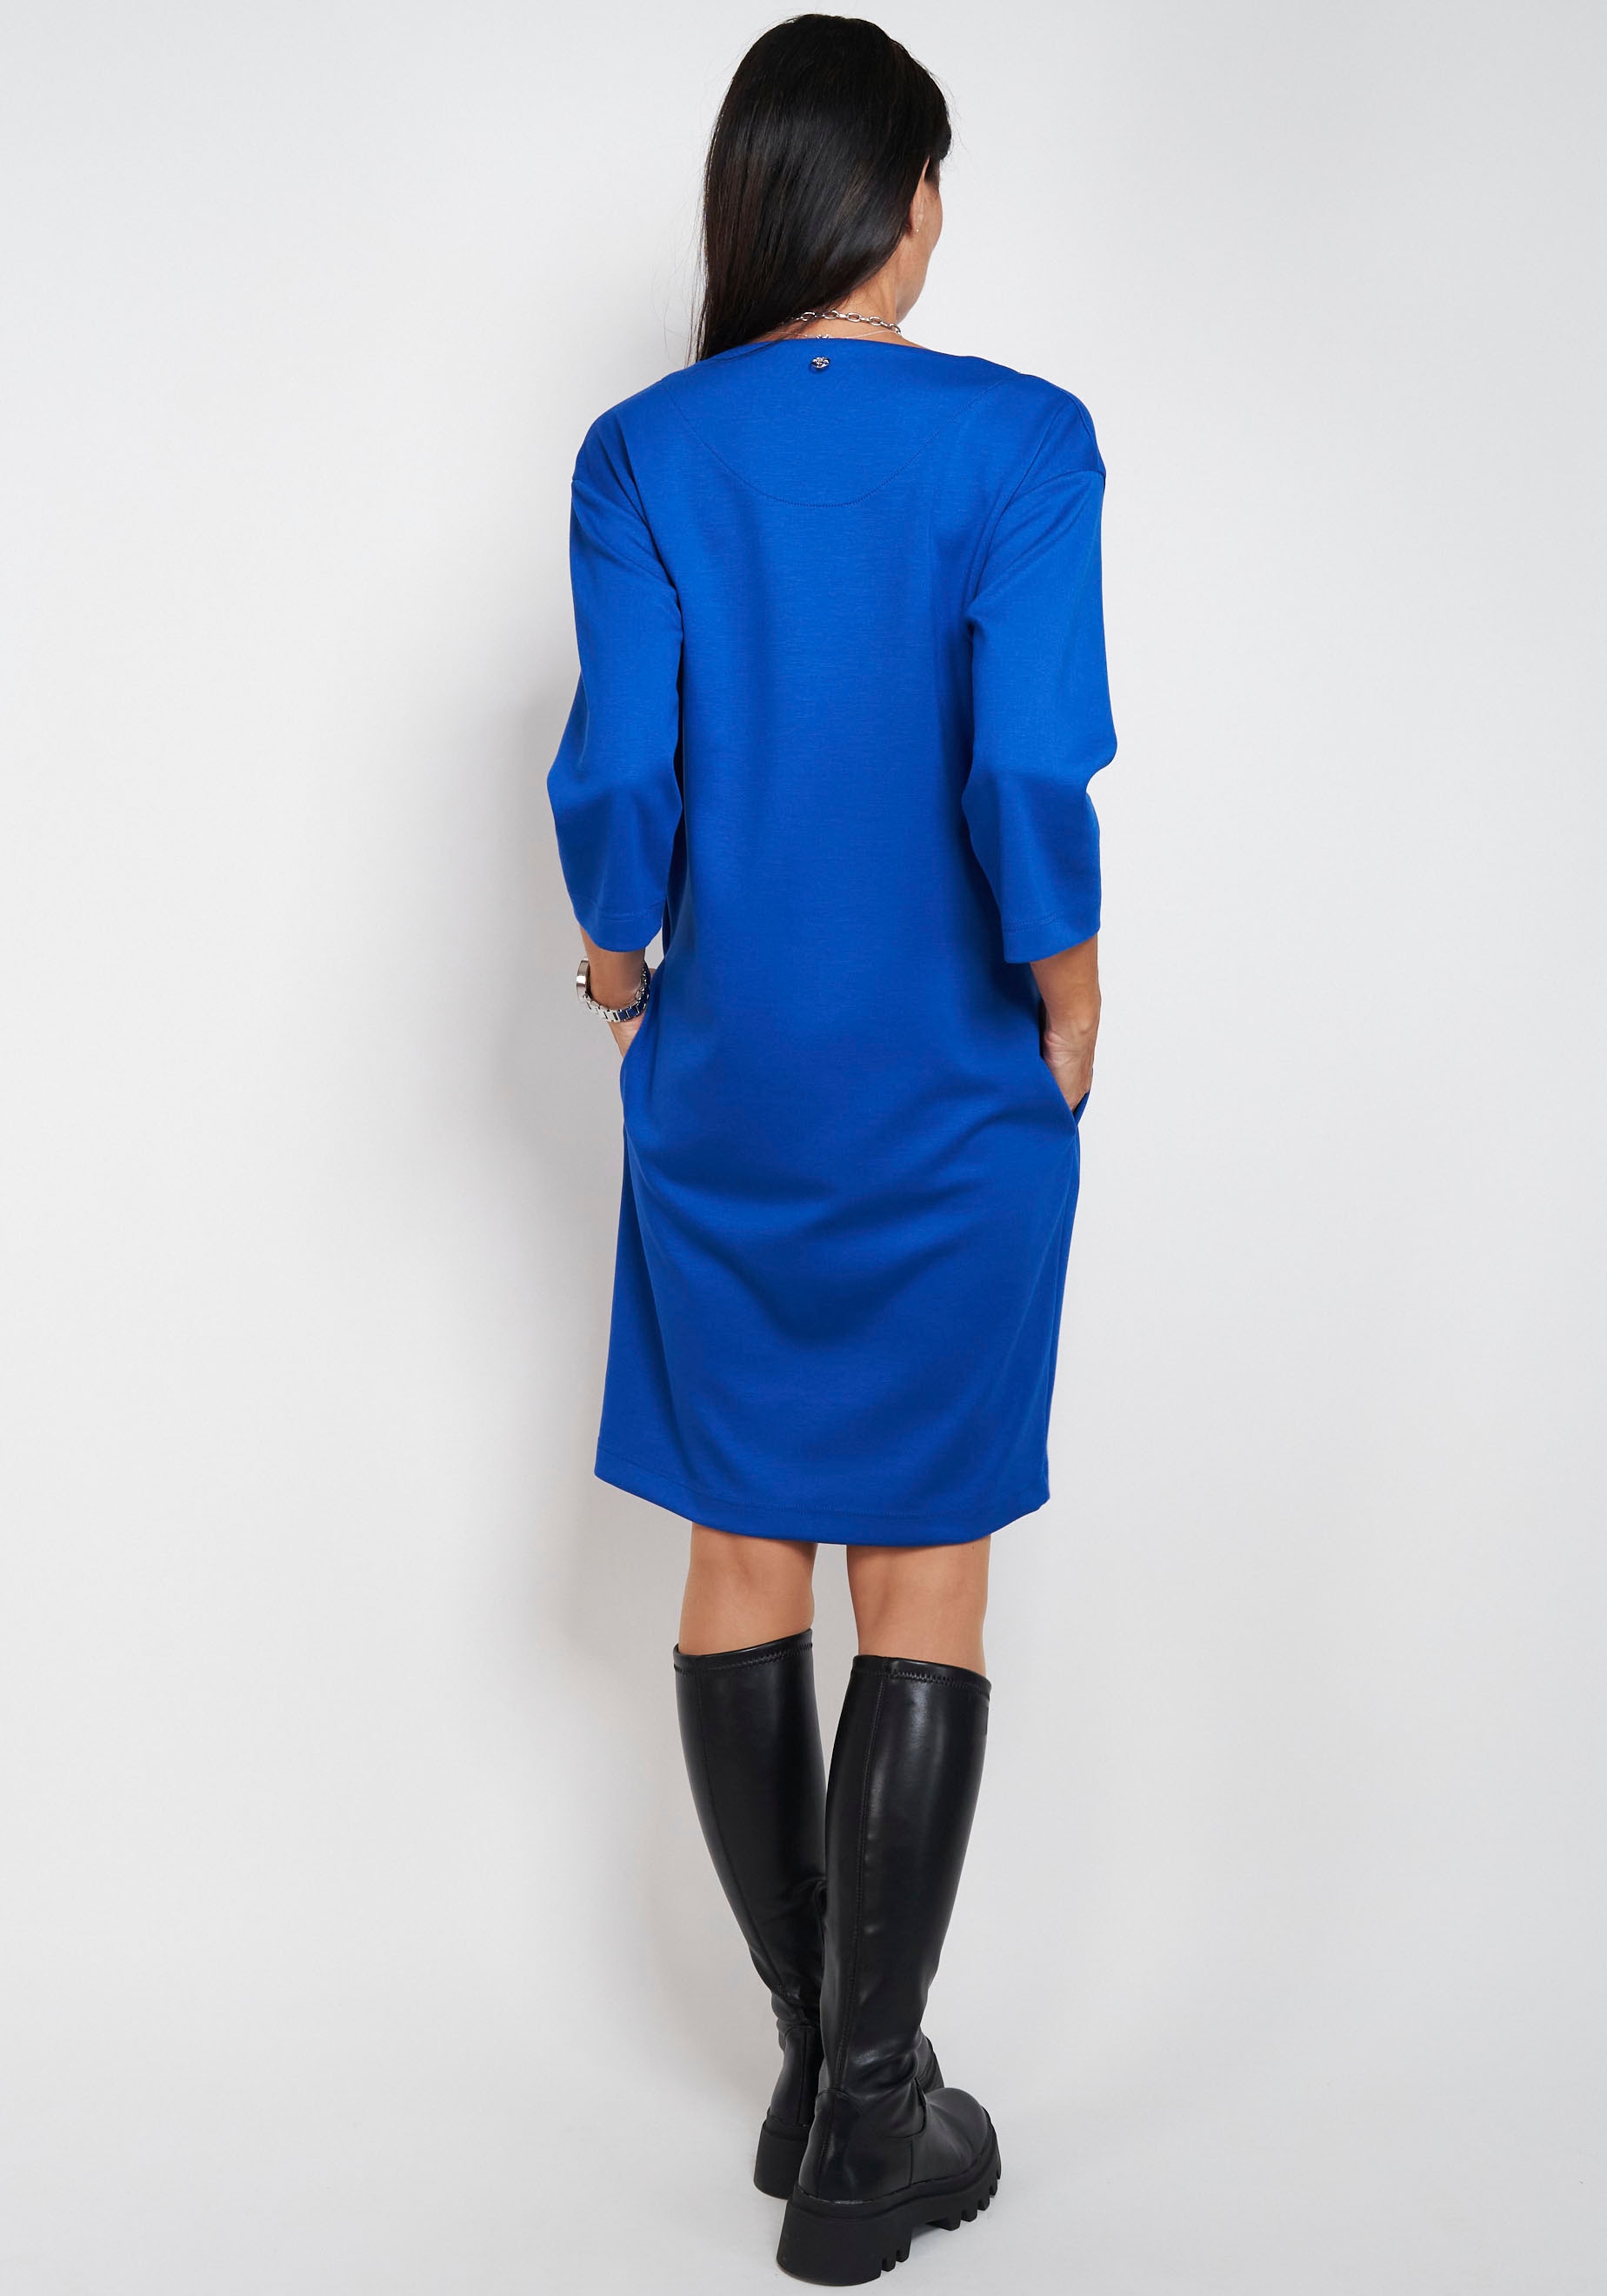 ♕ Seidel Moden Jerseykleid, Made in Germany versandkostenfrei bestellen | Jerseykleider